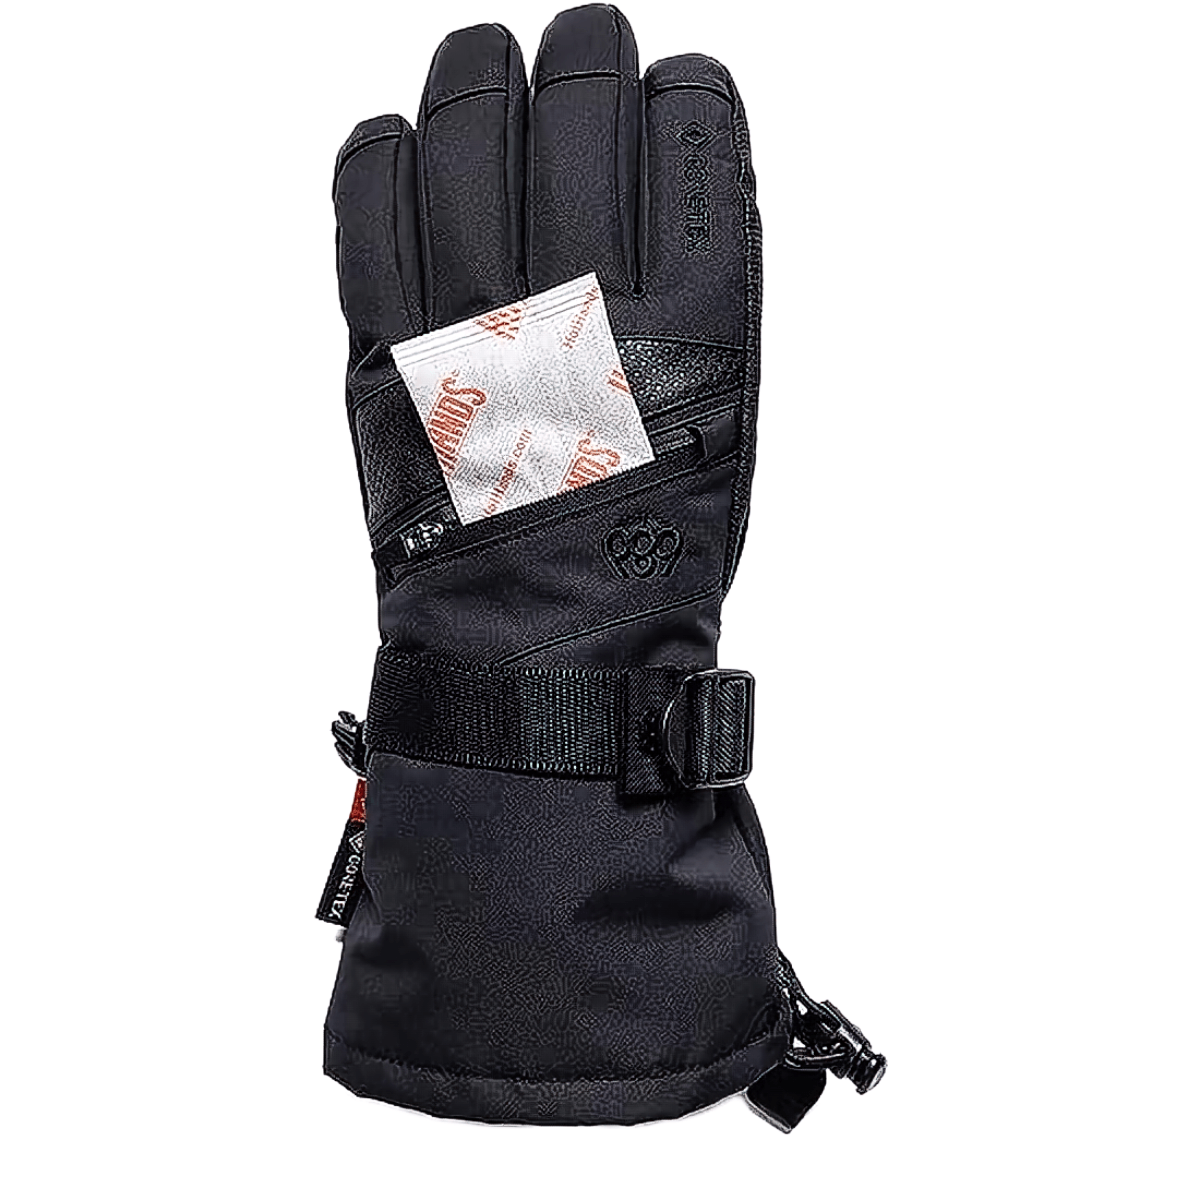 686 GORE-TEX Smarty 3-in-1 Gauntlet Glove - Women's Black S